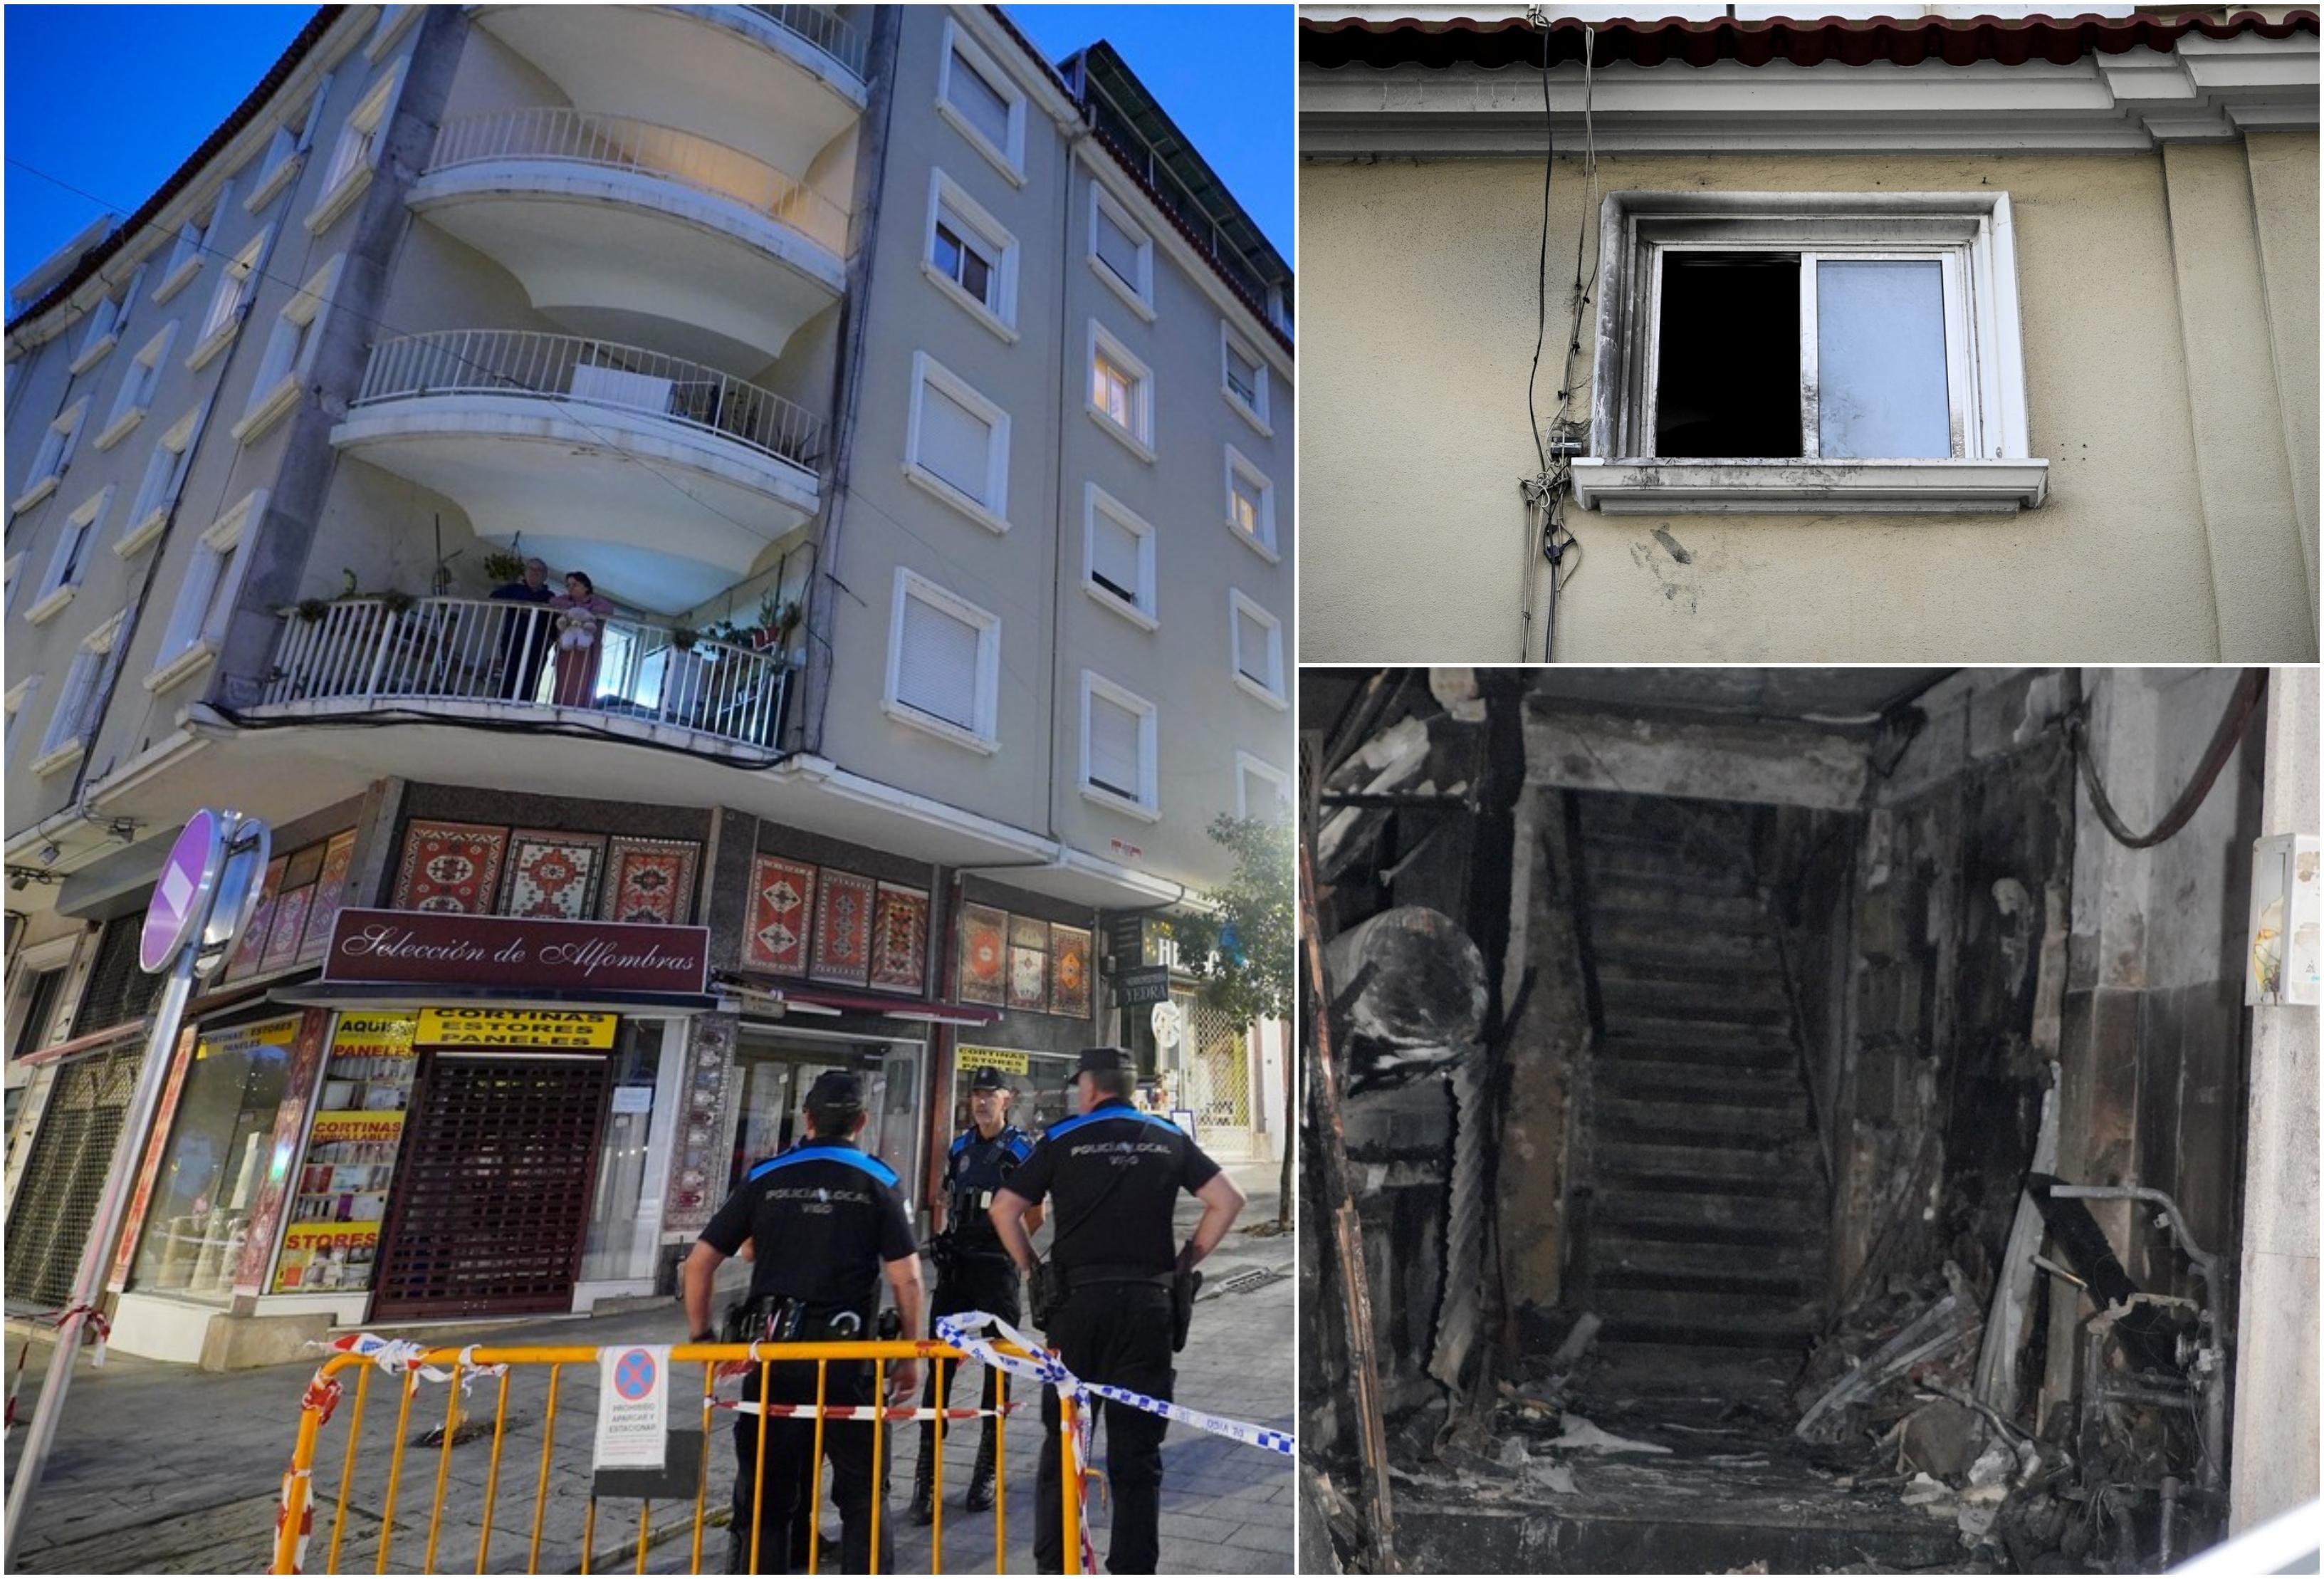 Patru copii au murit arşi de vii, după ce au rămas captivi într-un bloc cuprins de flăcări. Alţi 8 răniti, în urma incendiului din Vigo